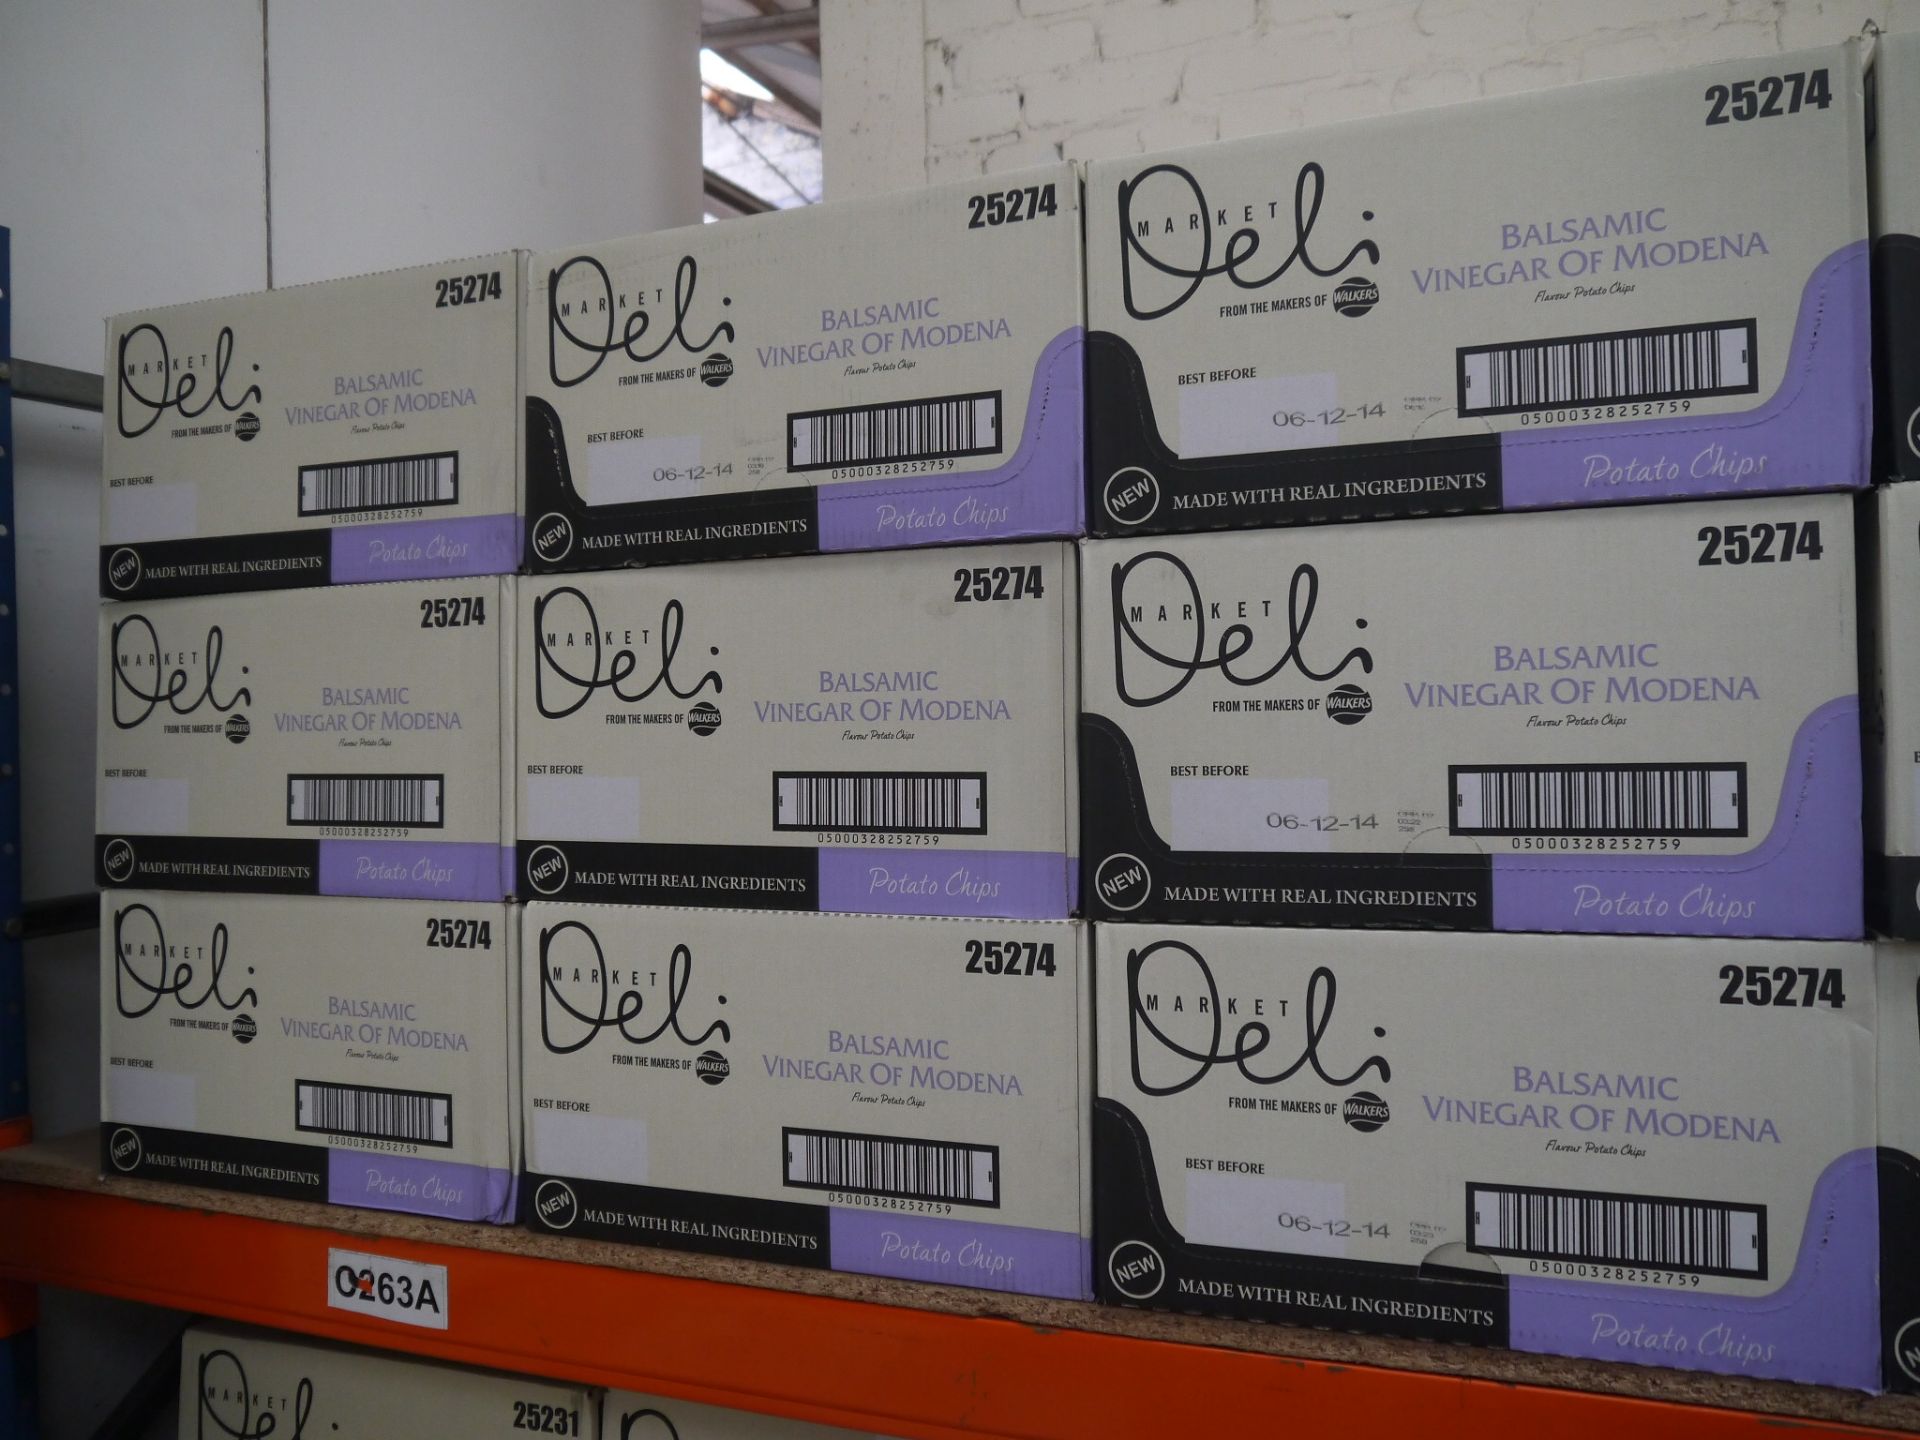 9x Box of 9, 165 g Walkers Deli Balsamic Vinegar Crisps. BEST BEFORE 06/12/2014